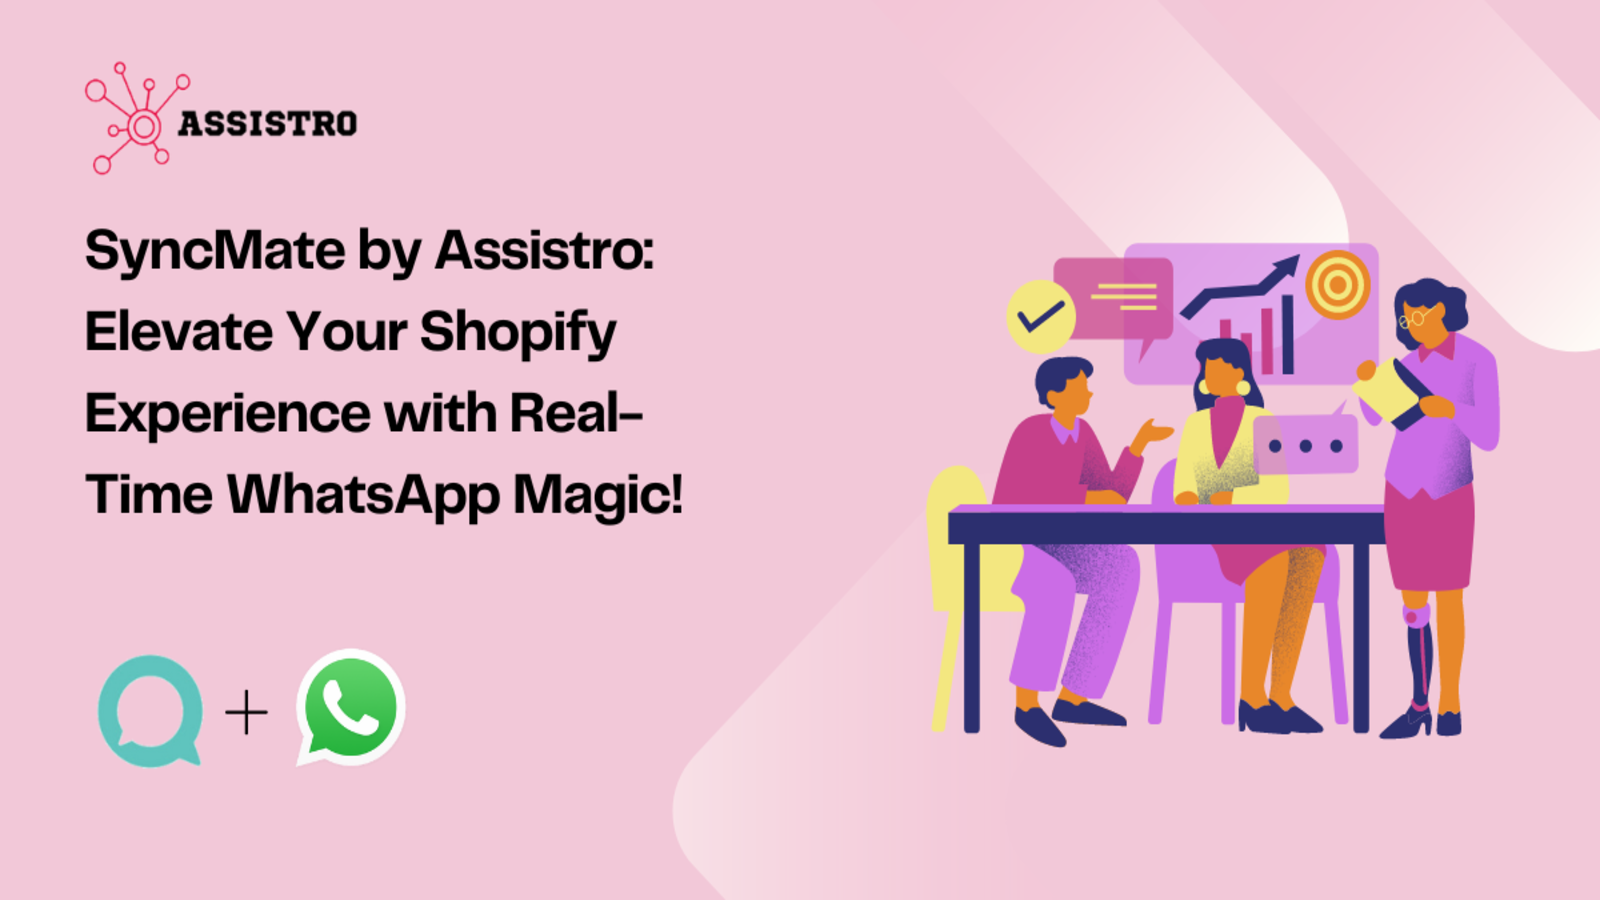 SyncMate by Assistro: Verbessern Sie das Shopify-Erlebnis Ihrer Kunden